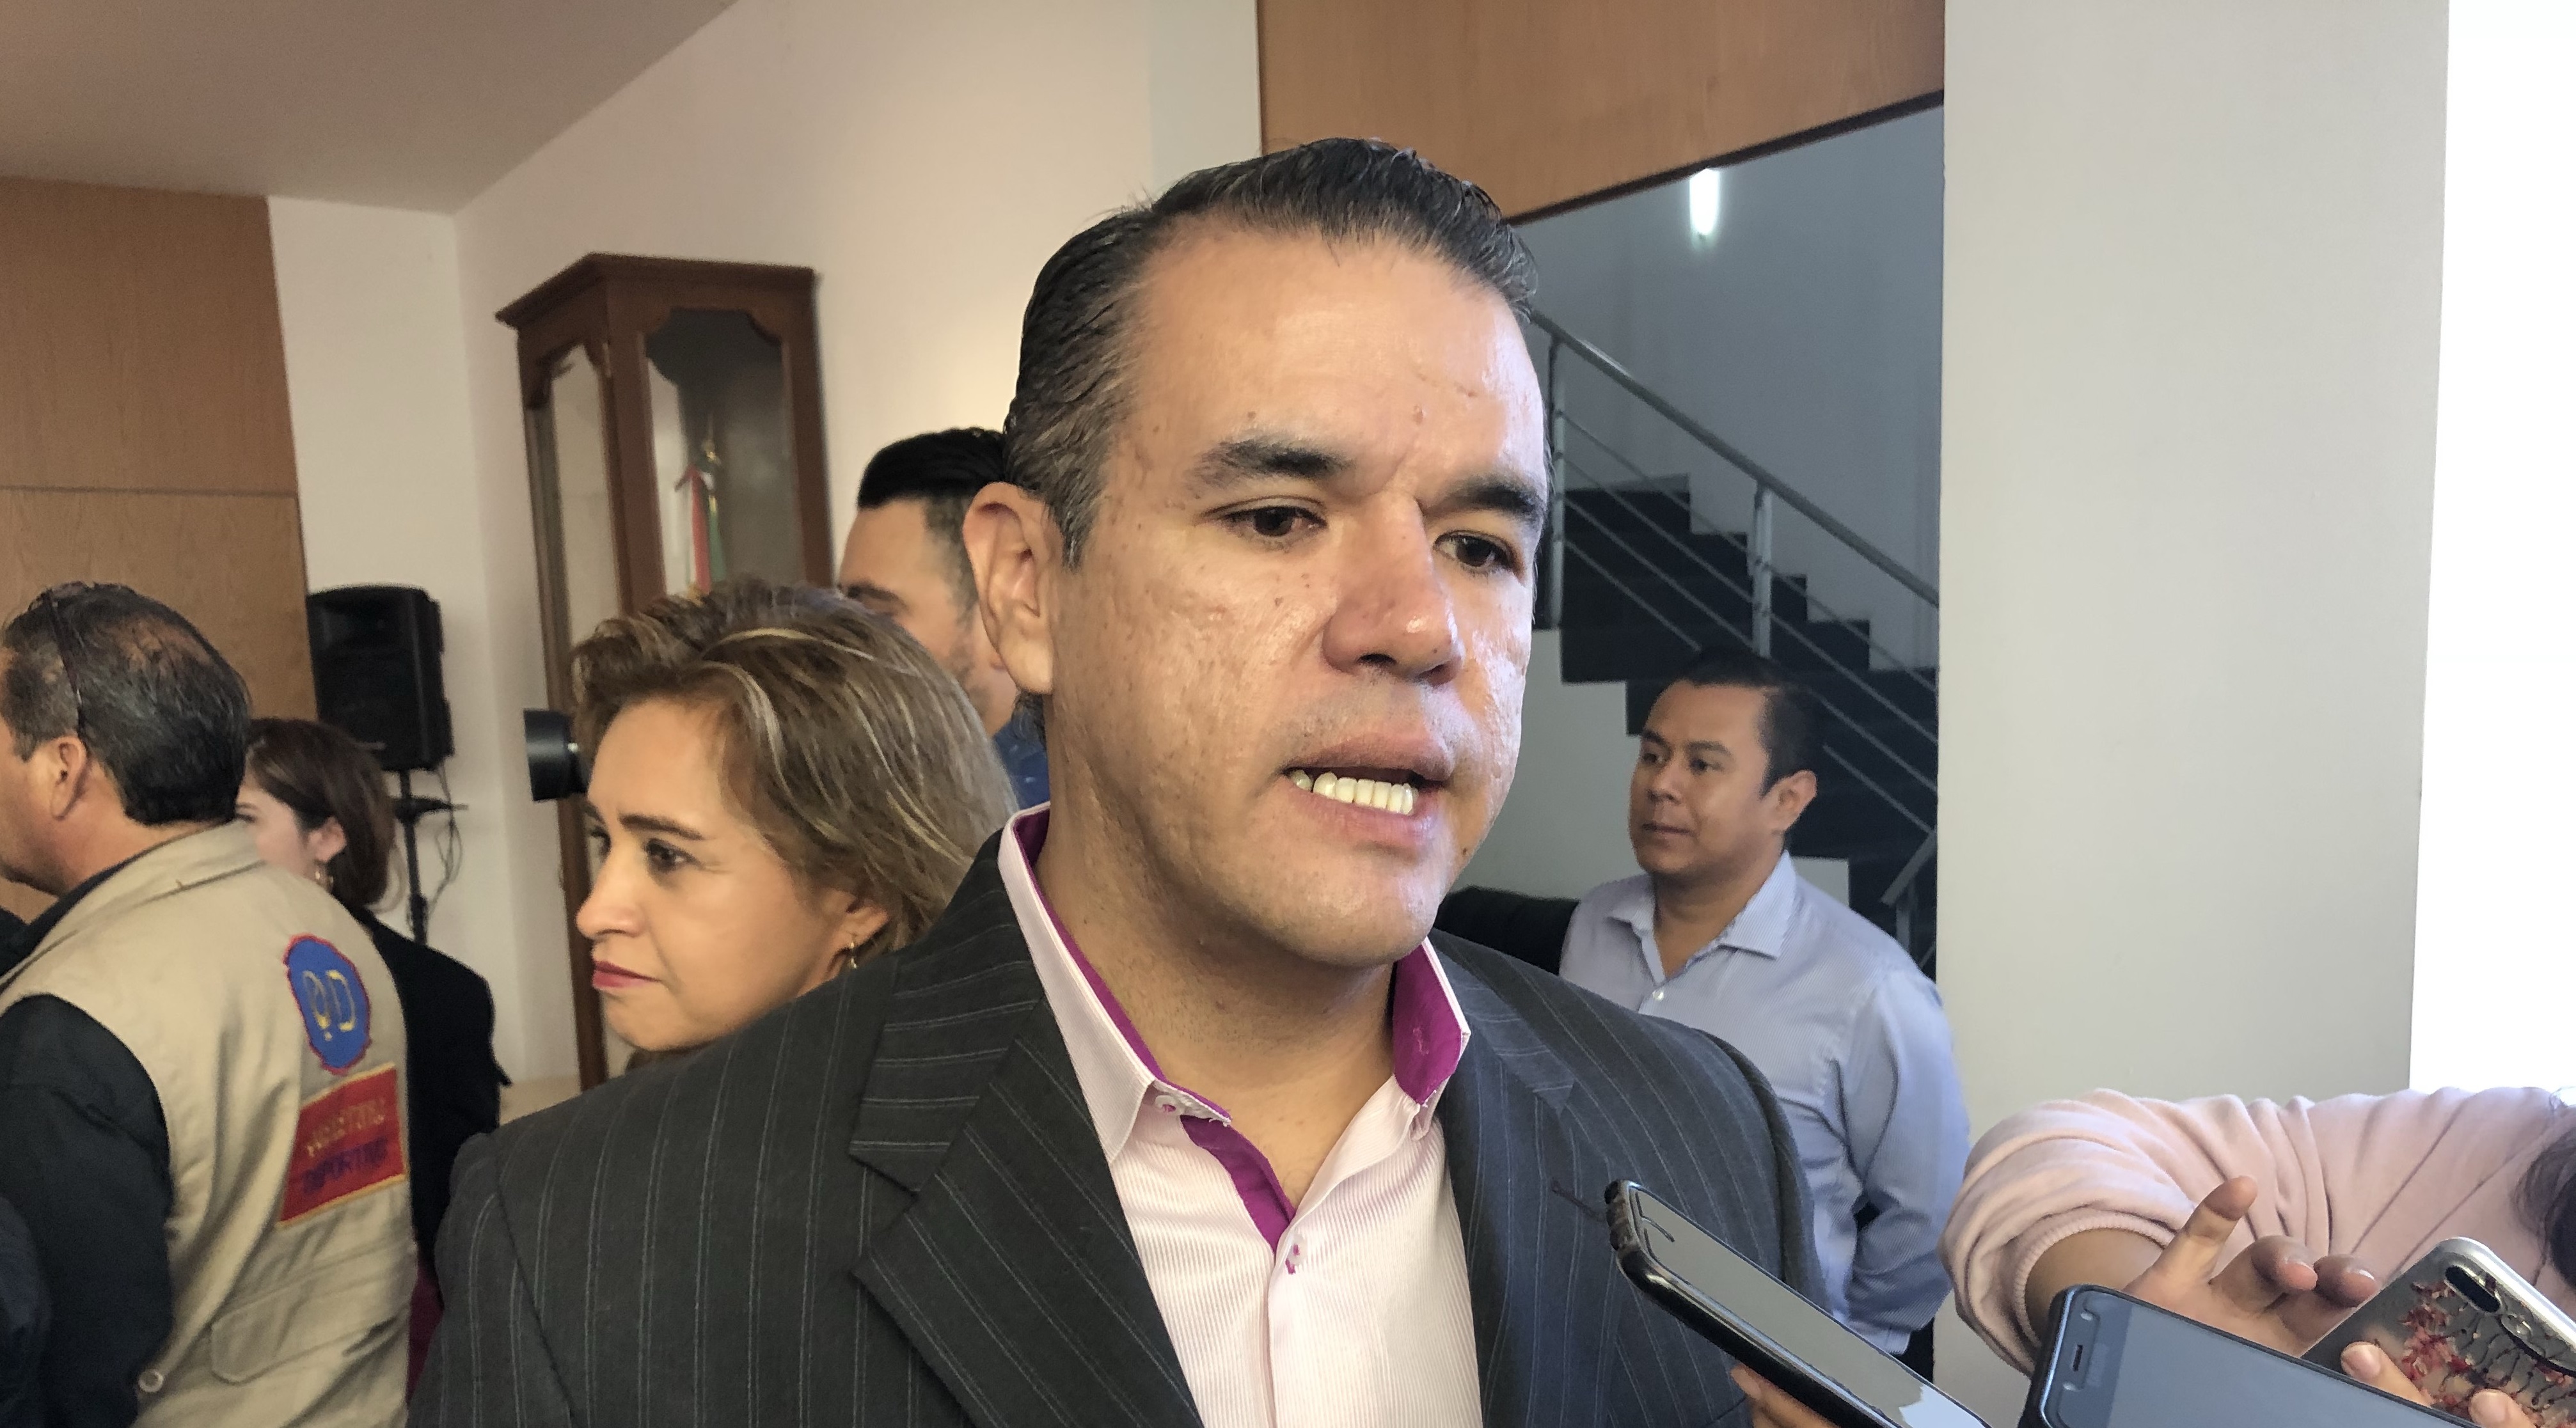  “La nómina está muy inflada en el Congreso”, asegura el morenista Mauricio Ruiz Olaes